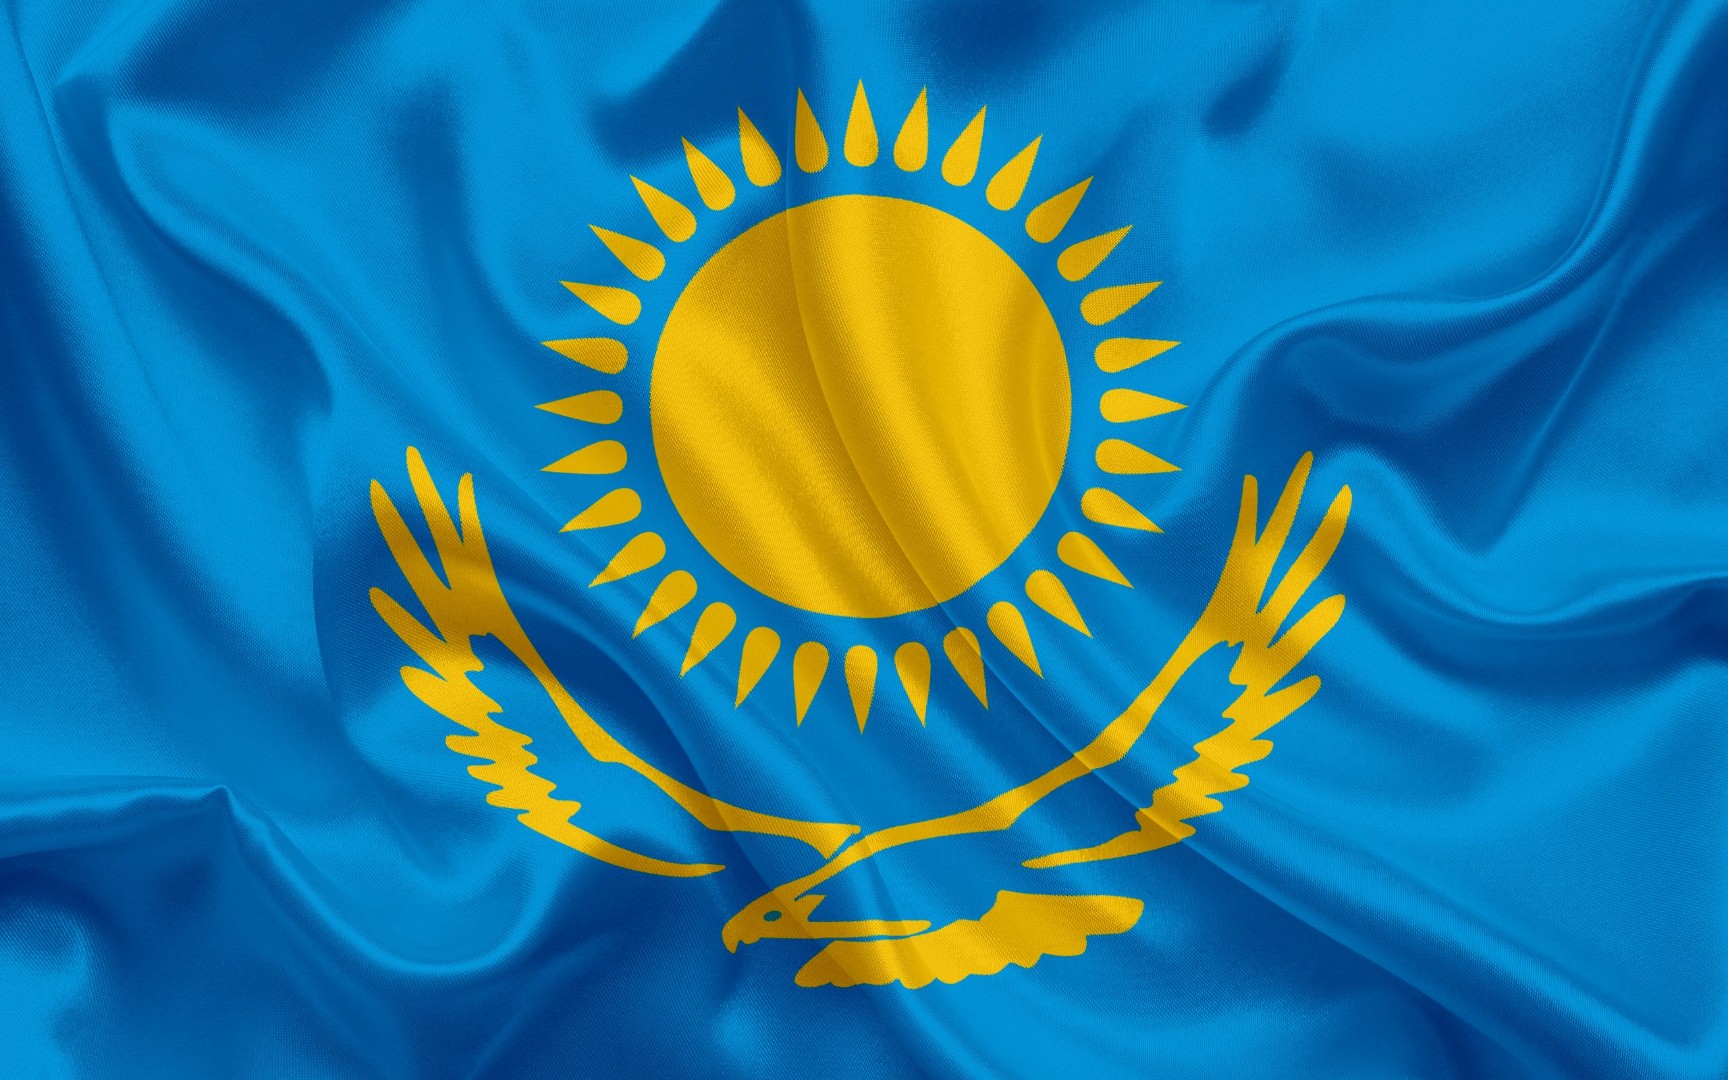 Ущерб от контрабанды пшеницы в Казахстан превысил 600 млн тенге